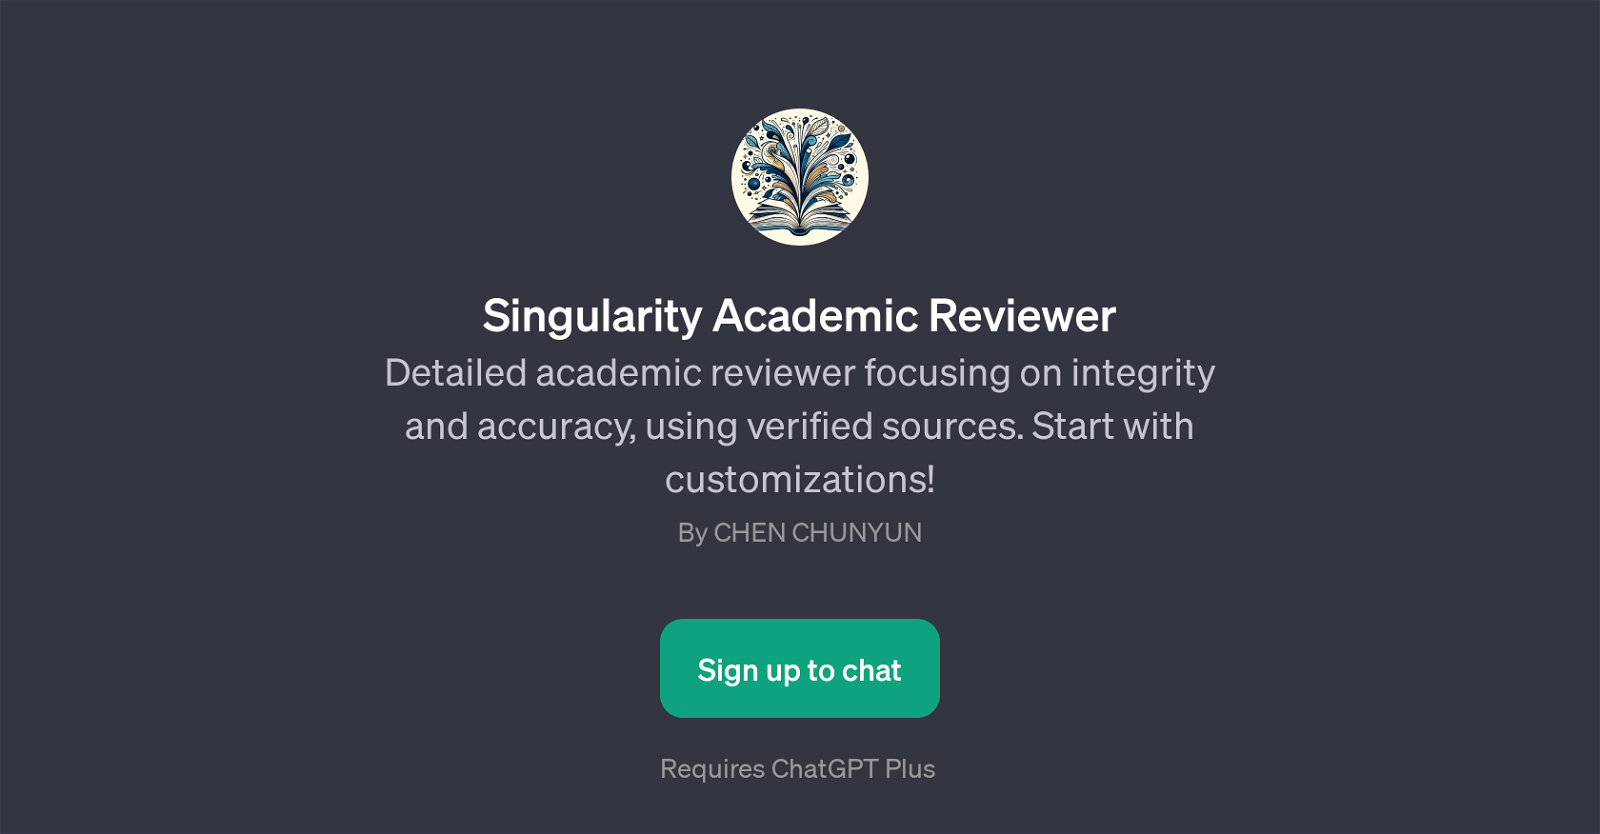 Singularity Academic Reviewer website